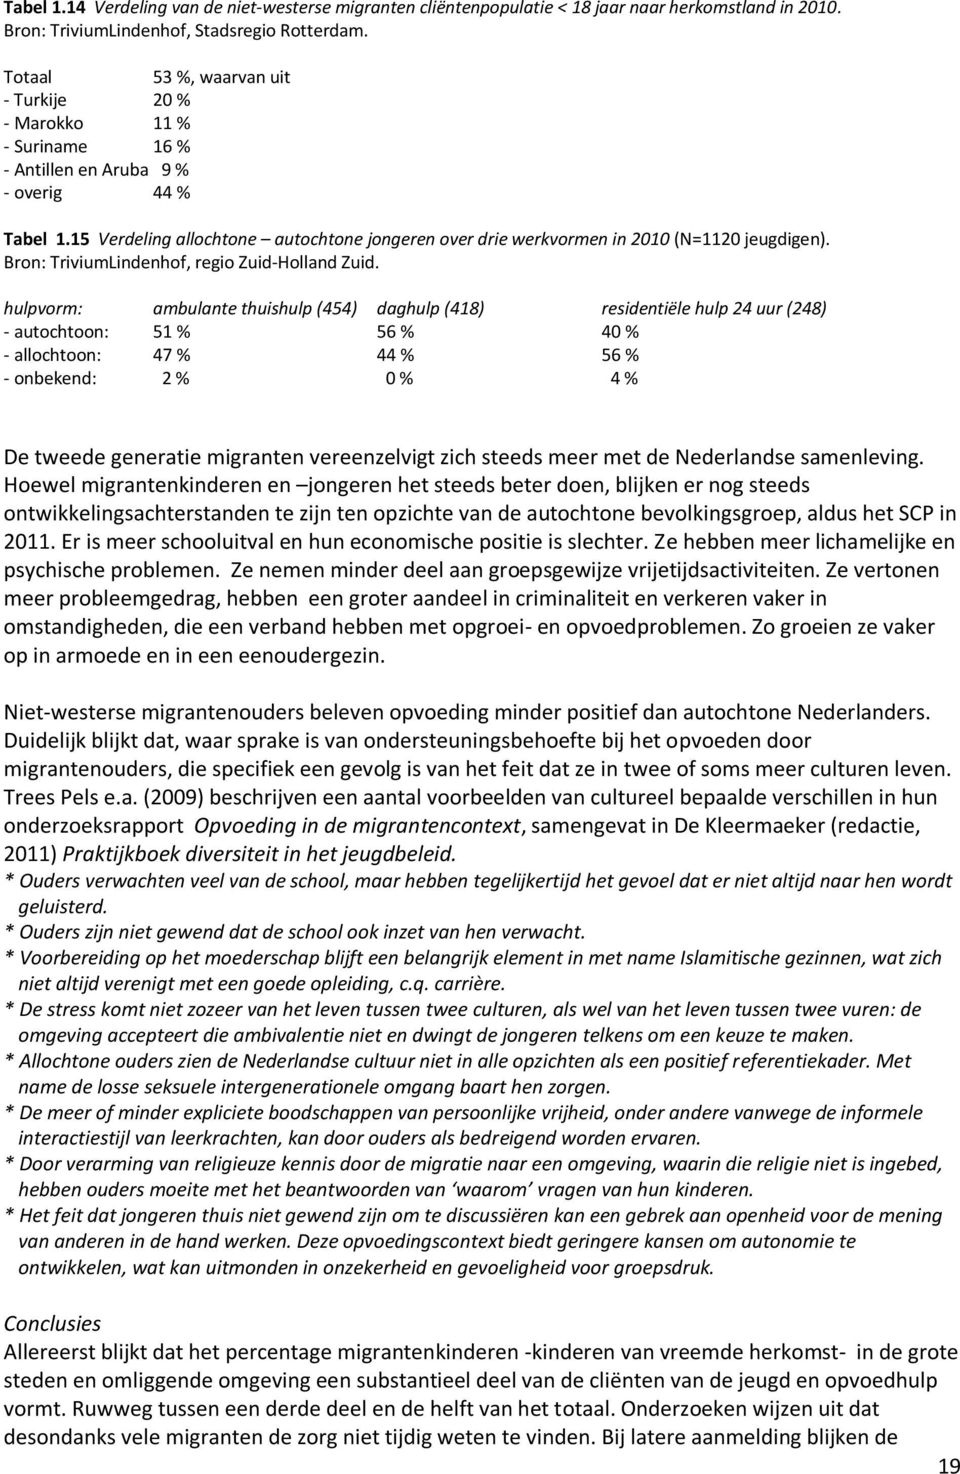 15 Verdeling allochtone autochtone jongeren over drie werkvormen in 2010 (N=1120 jeugdigen). Bron: TriviumLindenhof, regio Zuid-Holland Zuid.